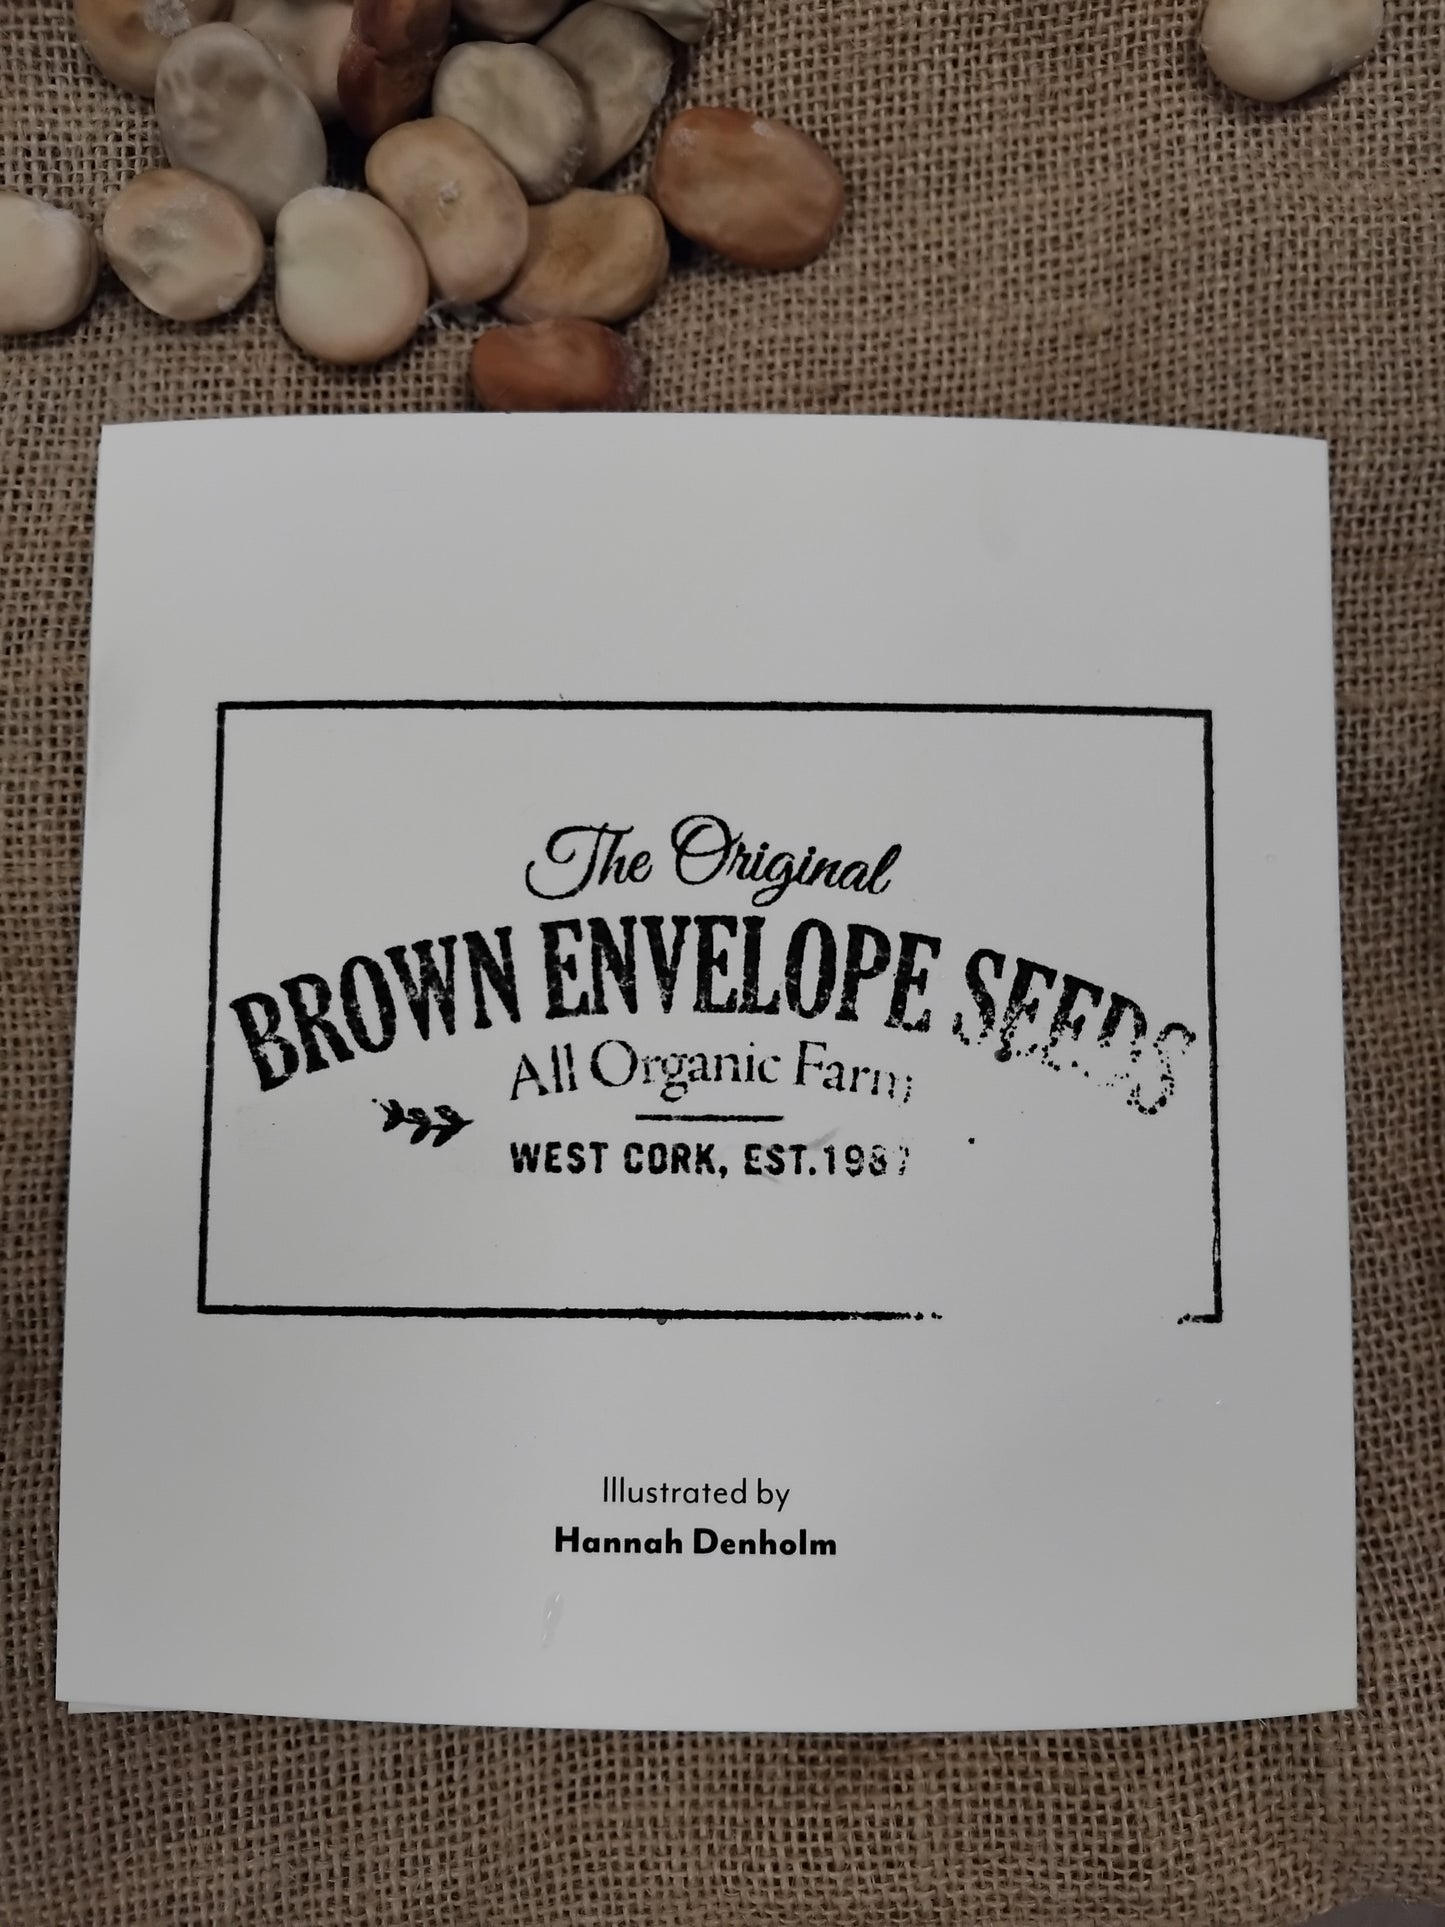 Brown Envelope Seeds Greetings Cards